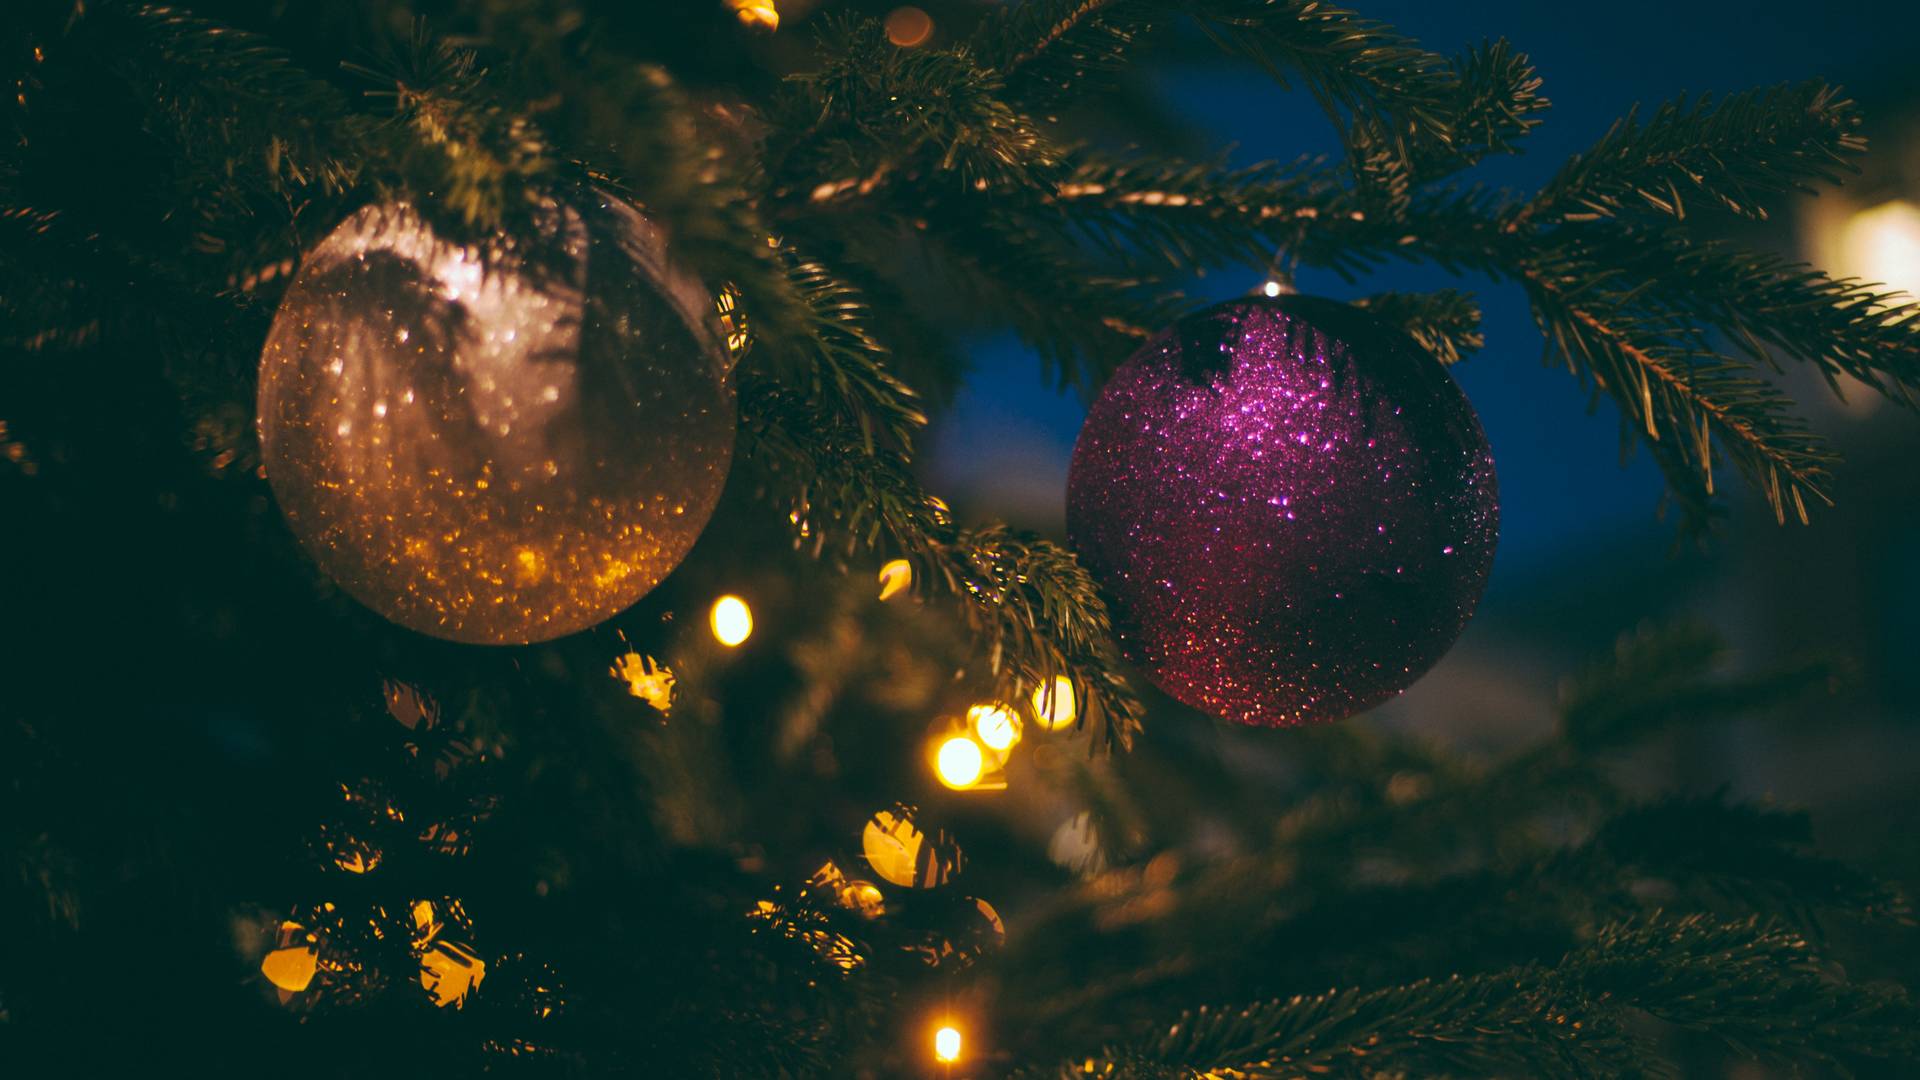 Wczesne wieszanie świątecznych dekoracji sprawia, że jesteśmy szczęśliwsi!